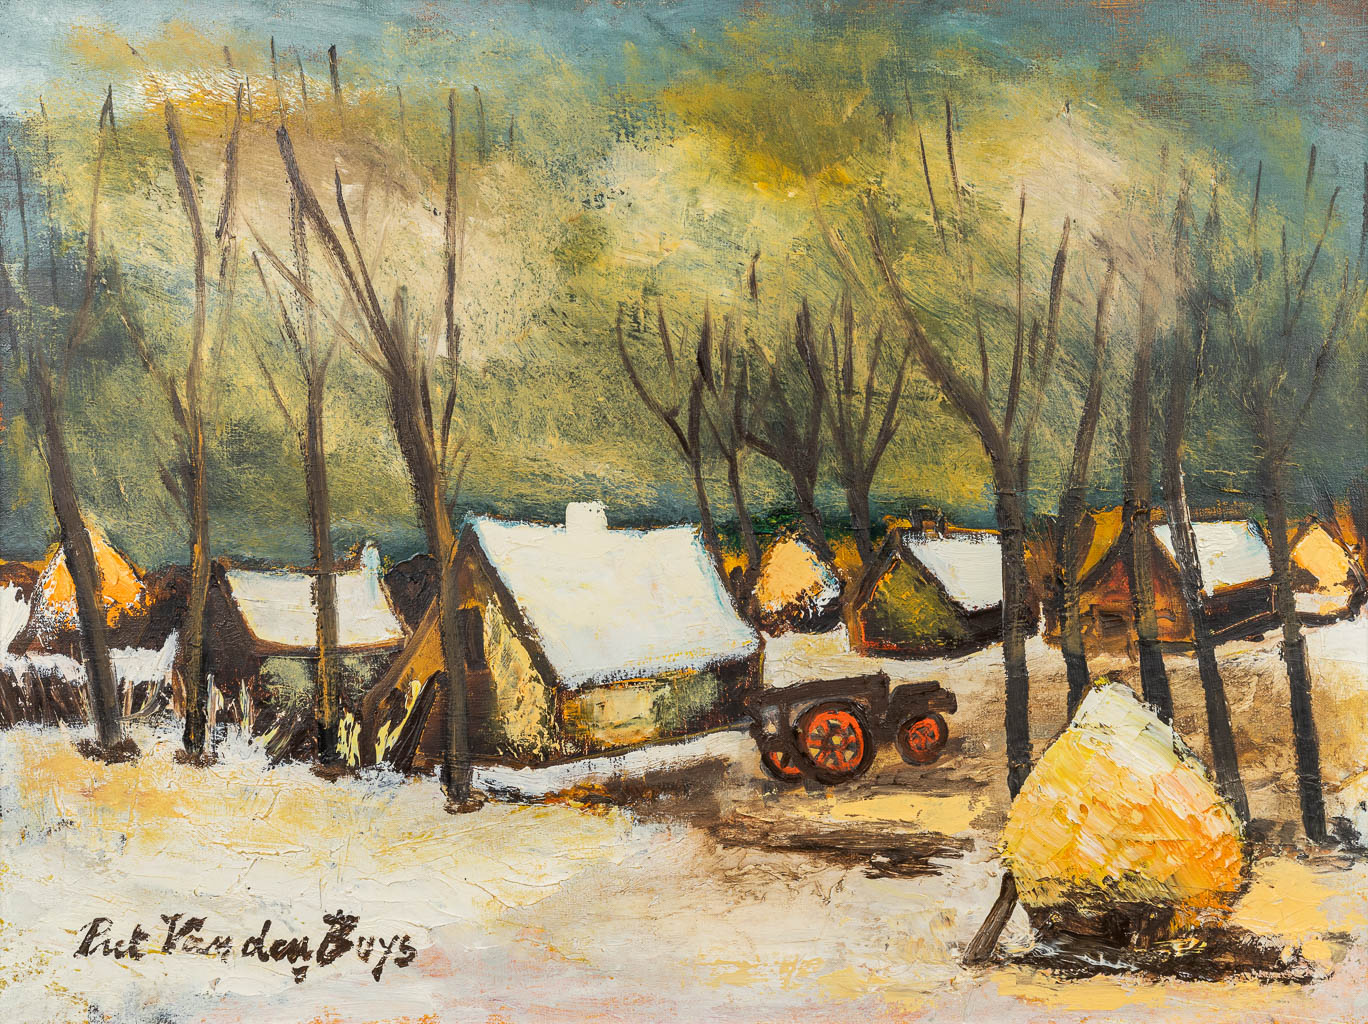 Piet VAN DEN BUYS (1935) 'Winterlandschap' een schilderij, olie op doek. (80 x 60 cm)